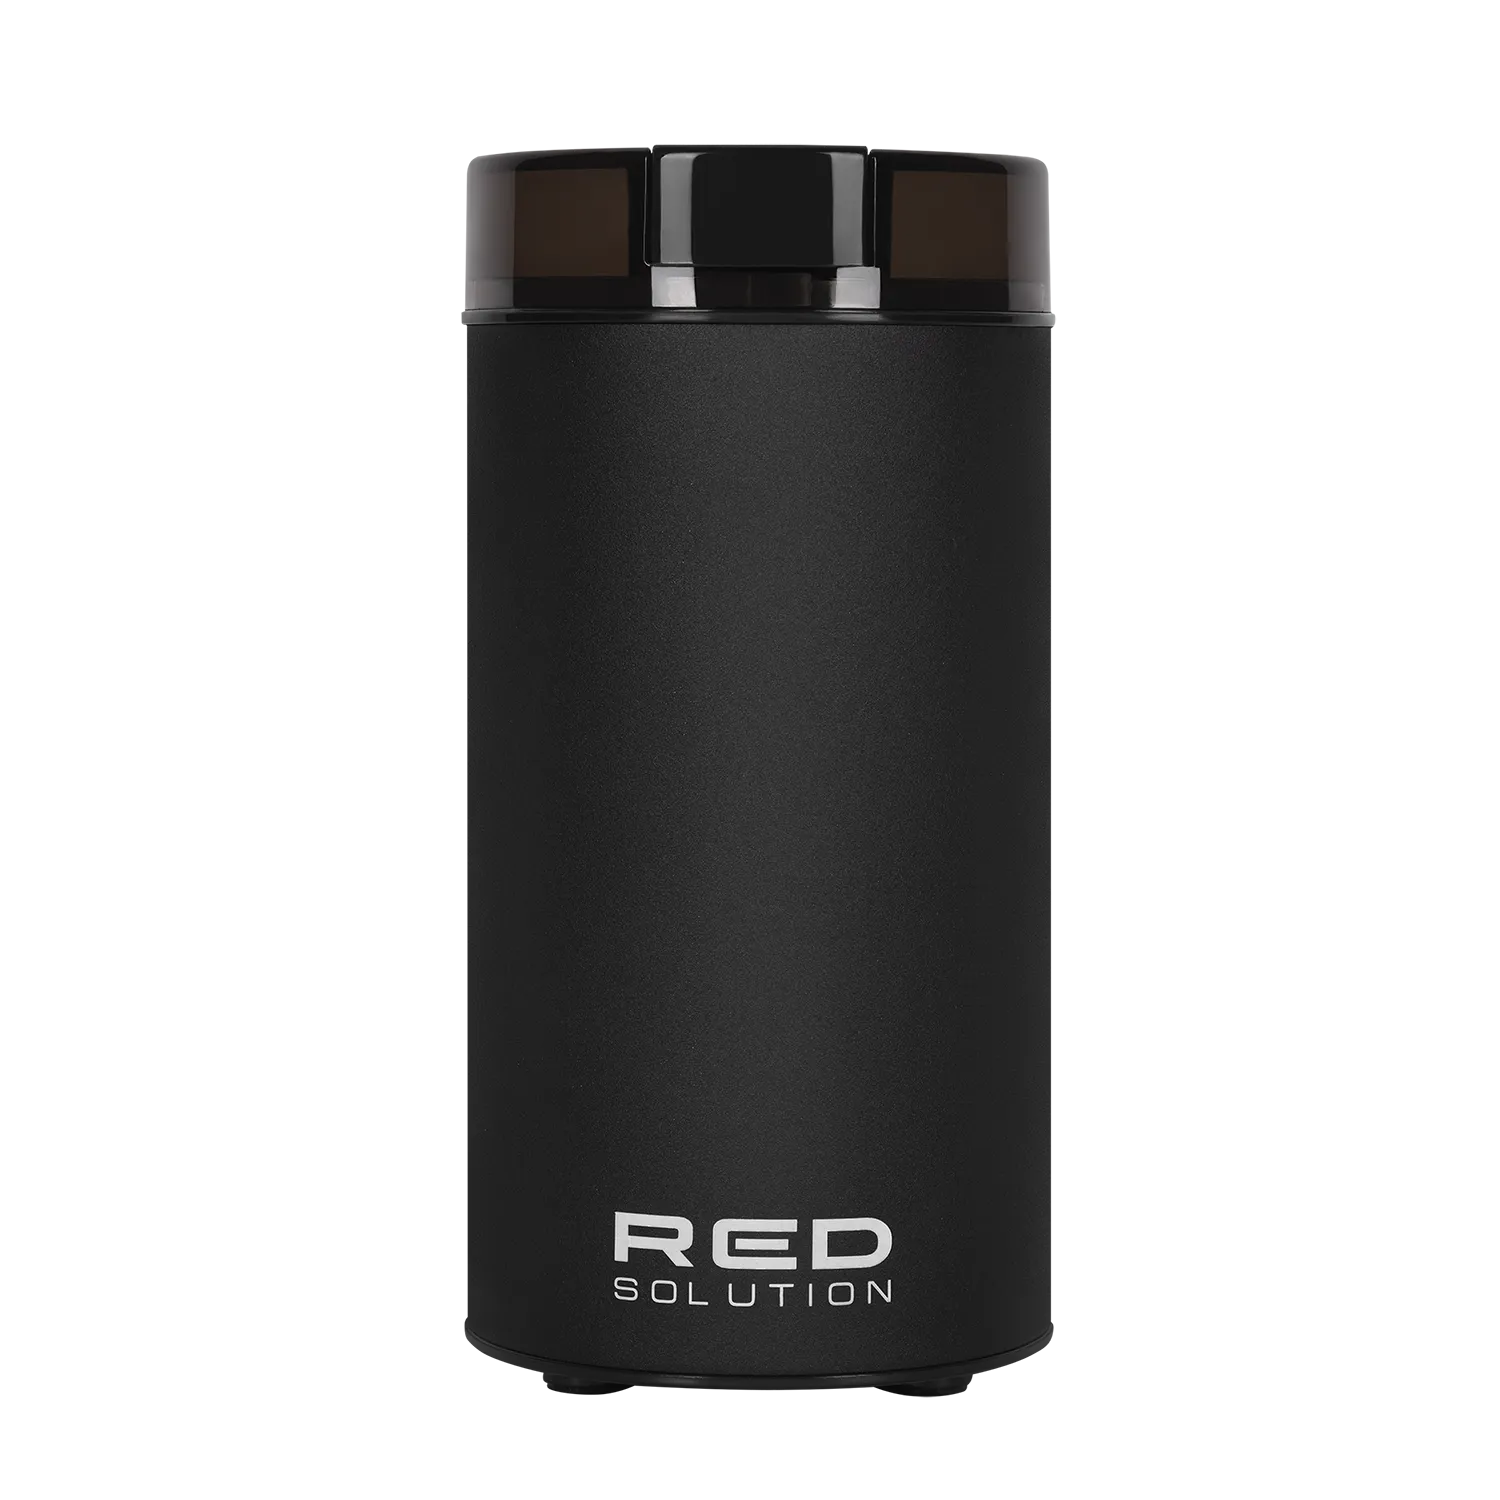 Кофемолка RED solution RCG-M1609, ротационный нож, 70 г, 240 Вт, черный (RCG-M1609)